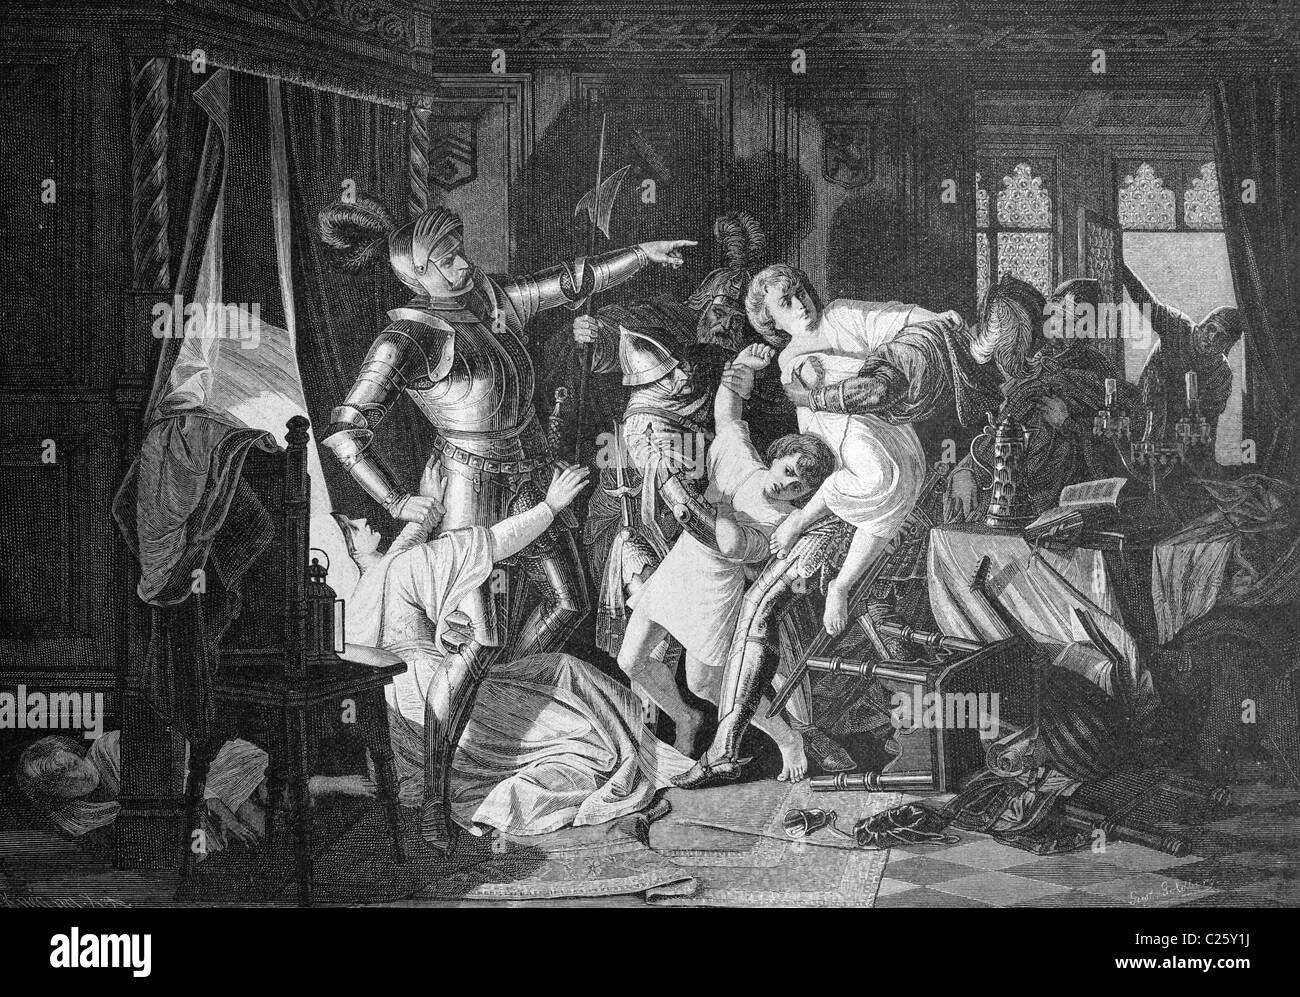 Altenburger Prinzenraub, auch Sächsischer Prinzenraub, 1455, die Entführung des sächsischen Fürsten, historische Abbildung ca. 1893 Stockfoto